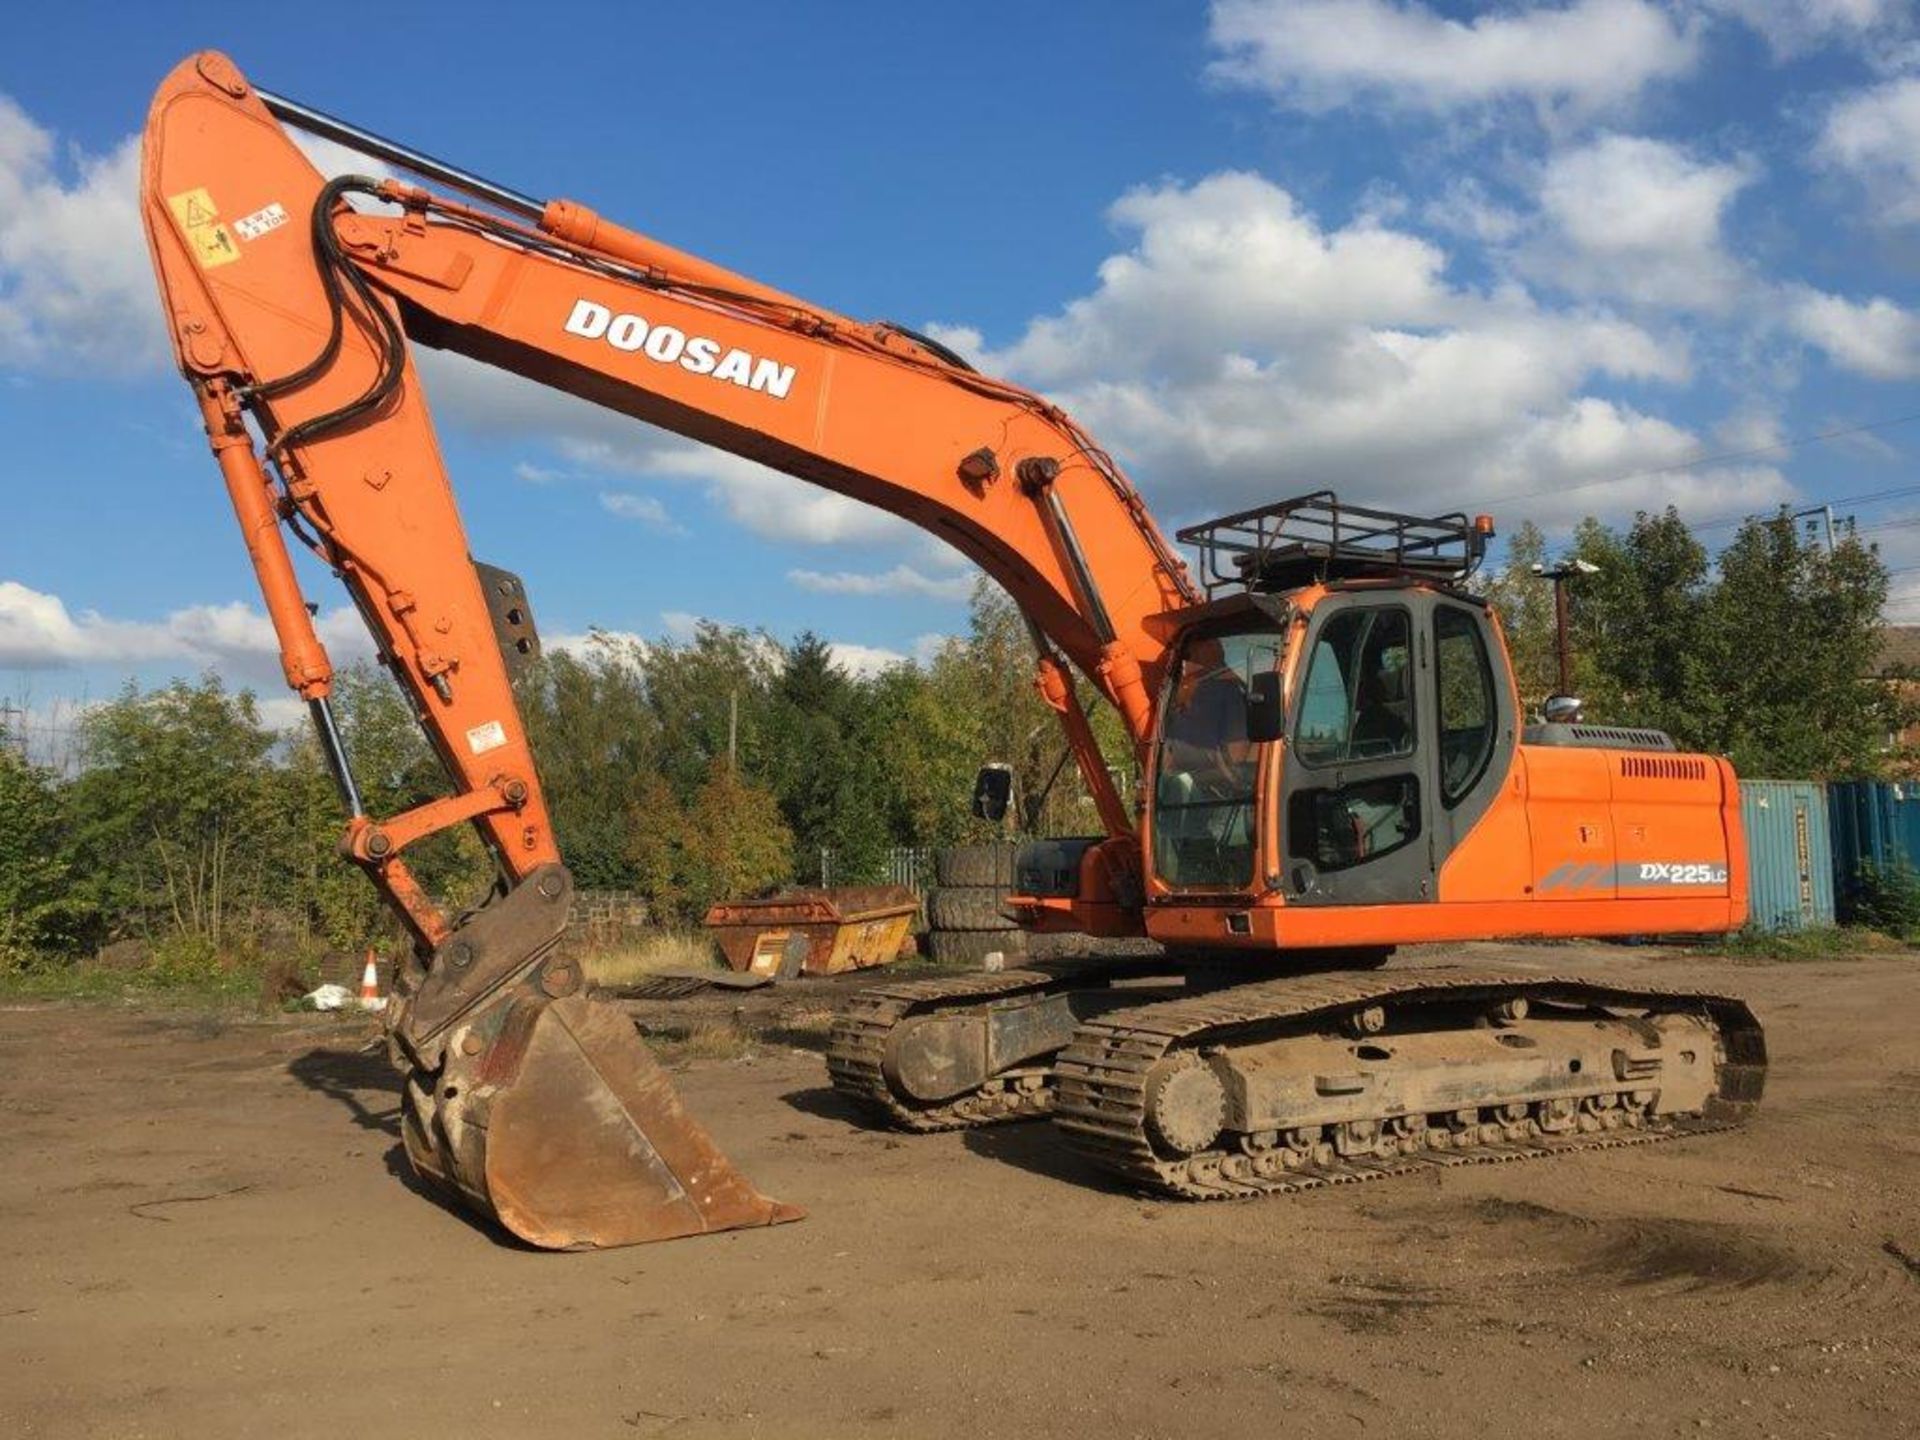 Doosan DX225LC Excavator - Image 6 of 6